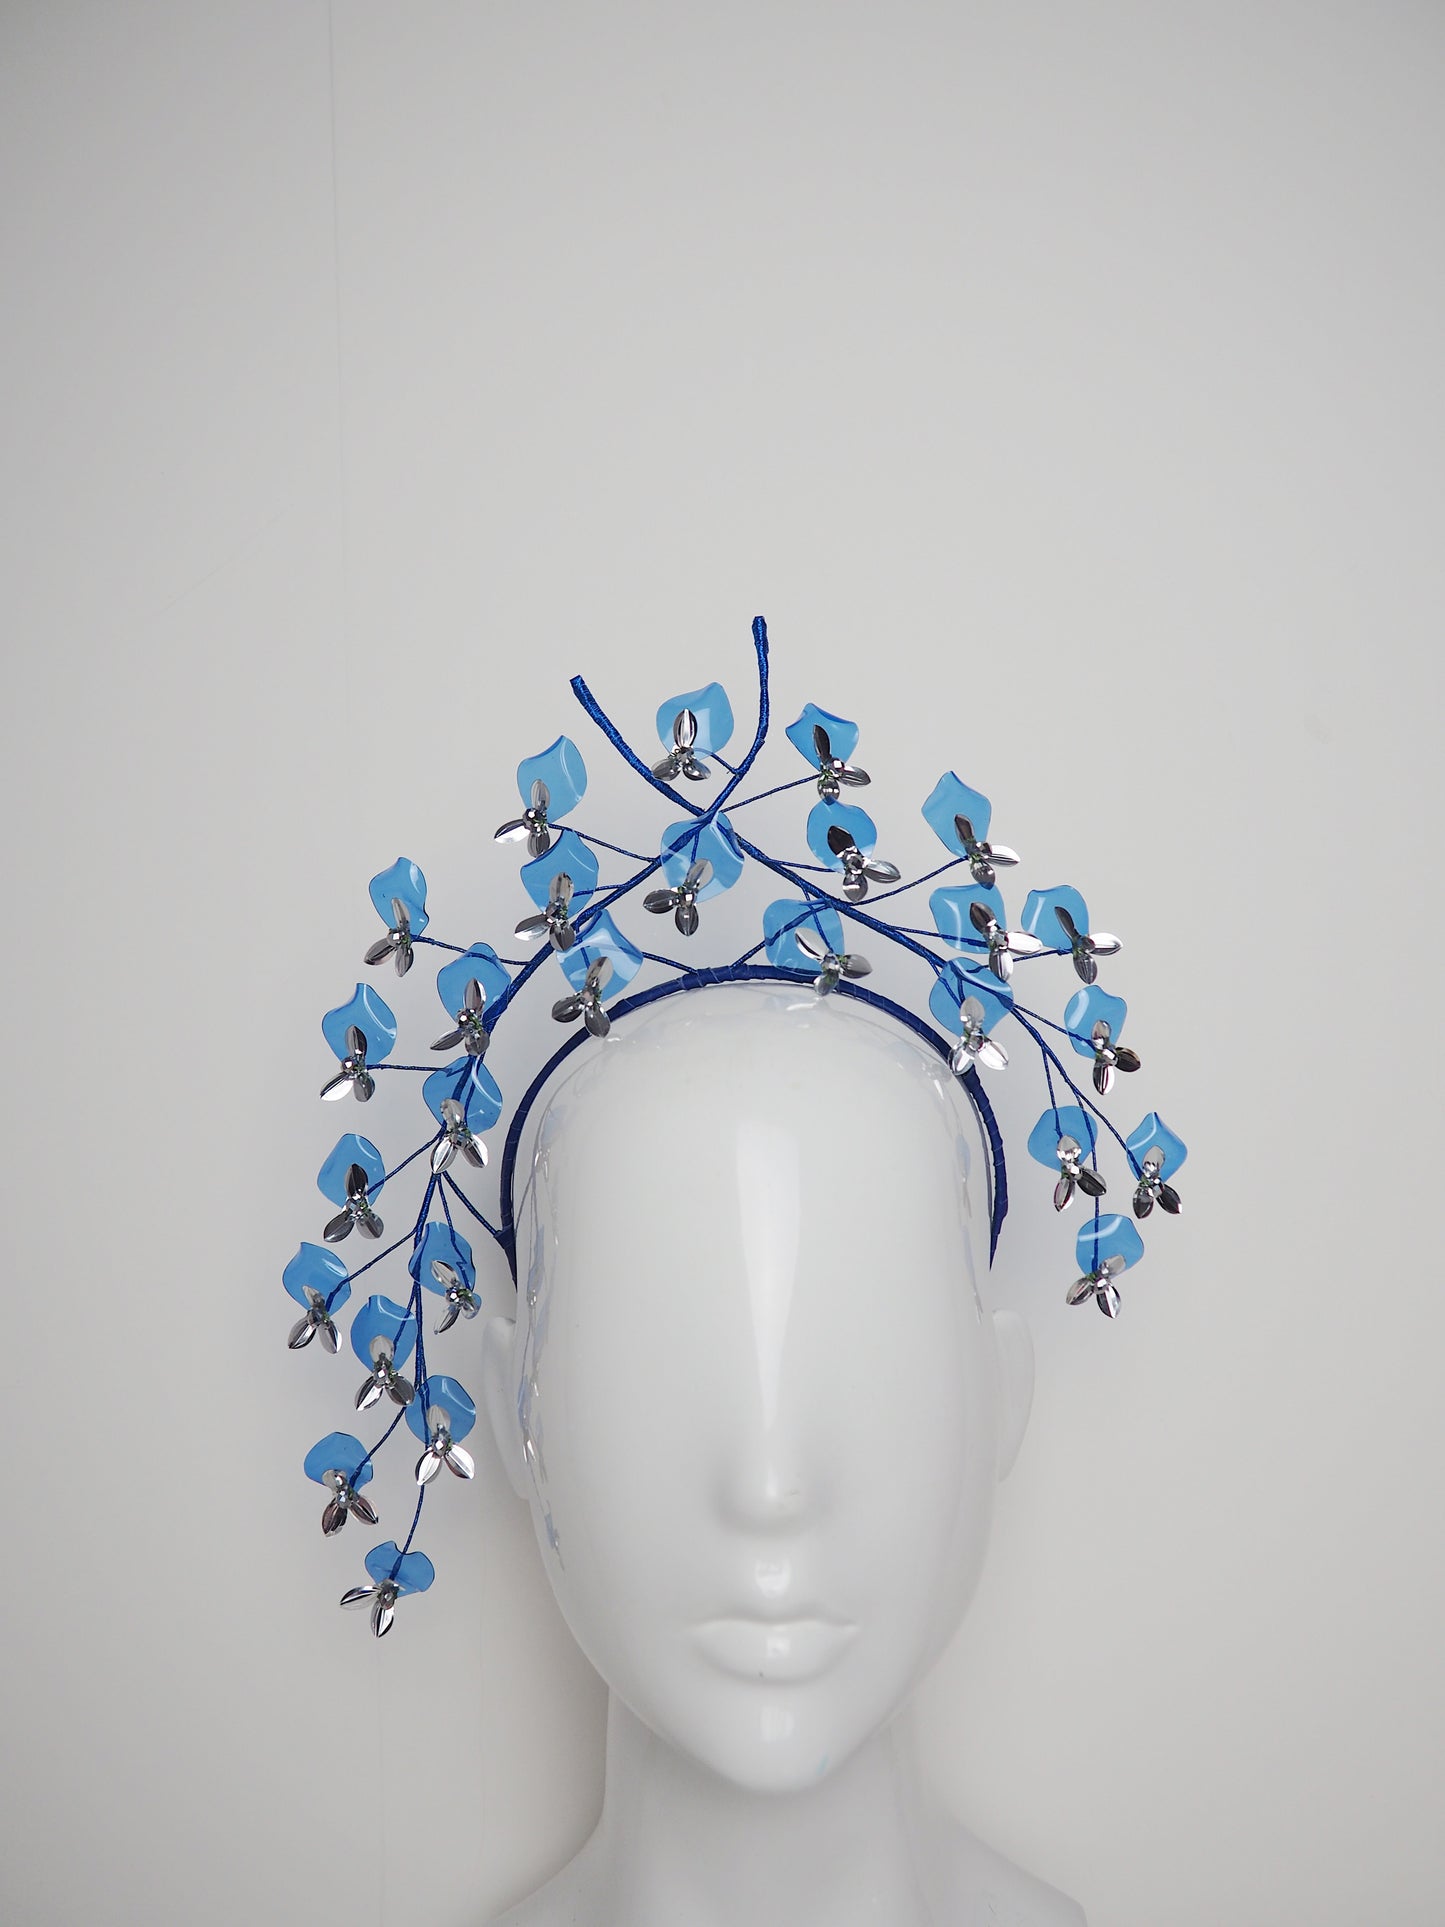 Blue Wisteria - Blue and silver crystoform wisteria blossom headband